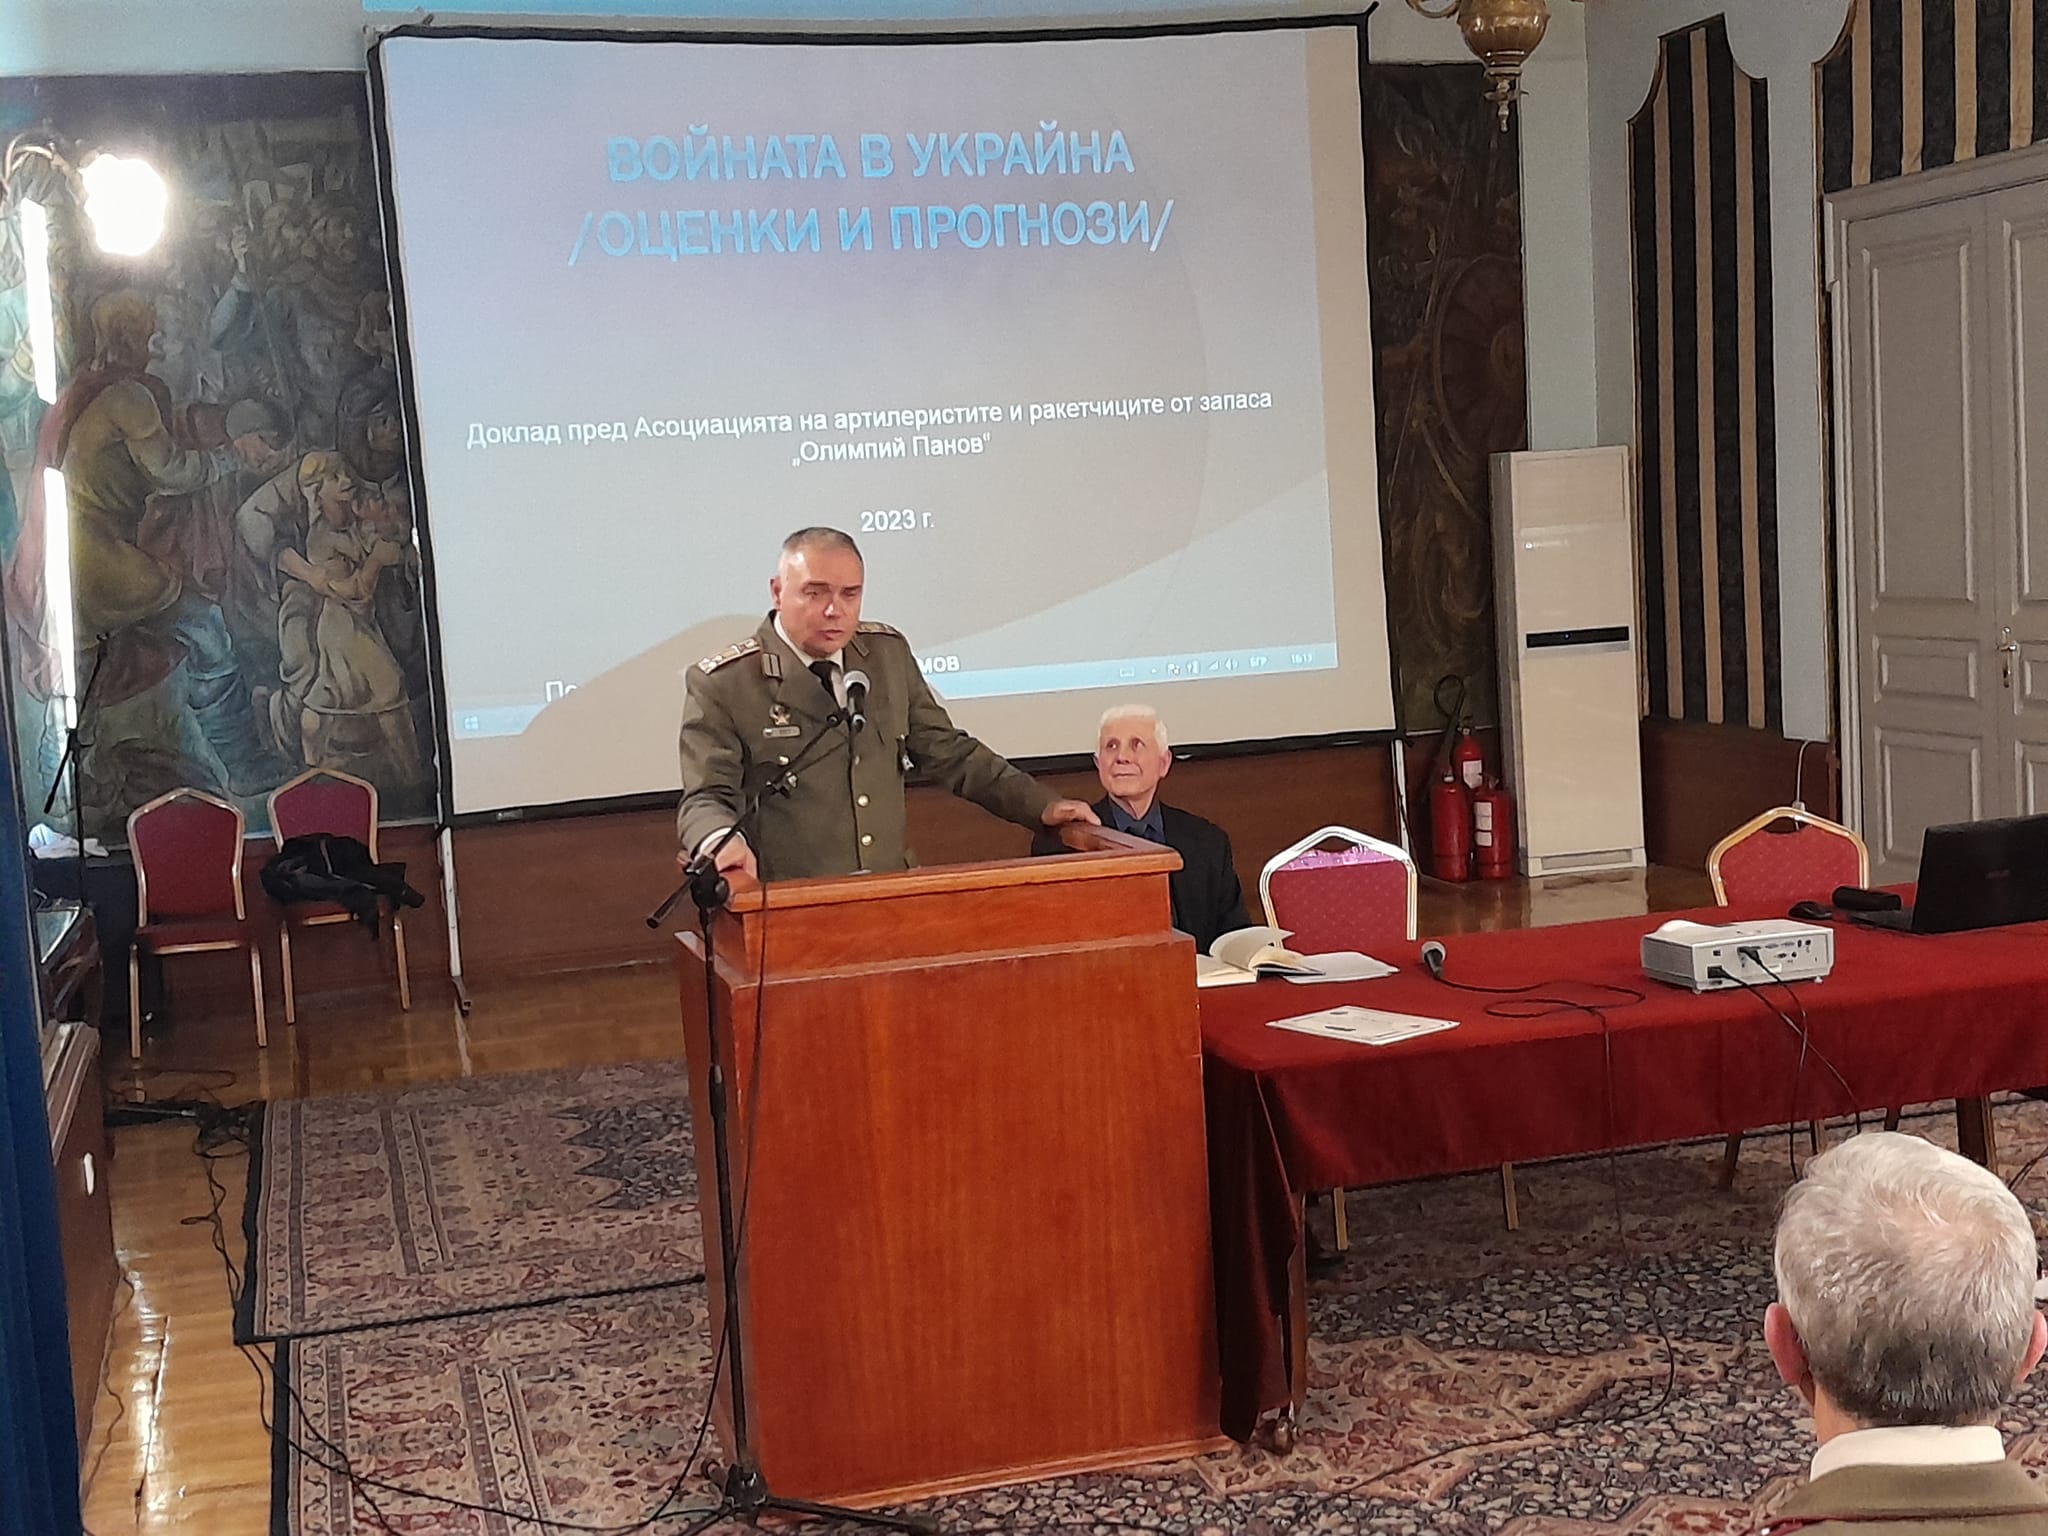 Военната академия следи и анализира внимателно войната в Украйна